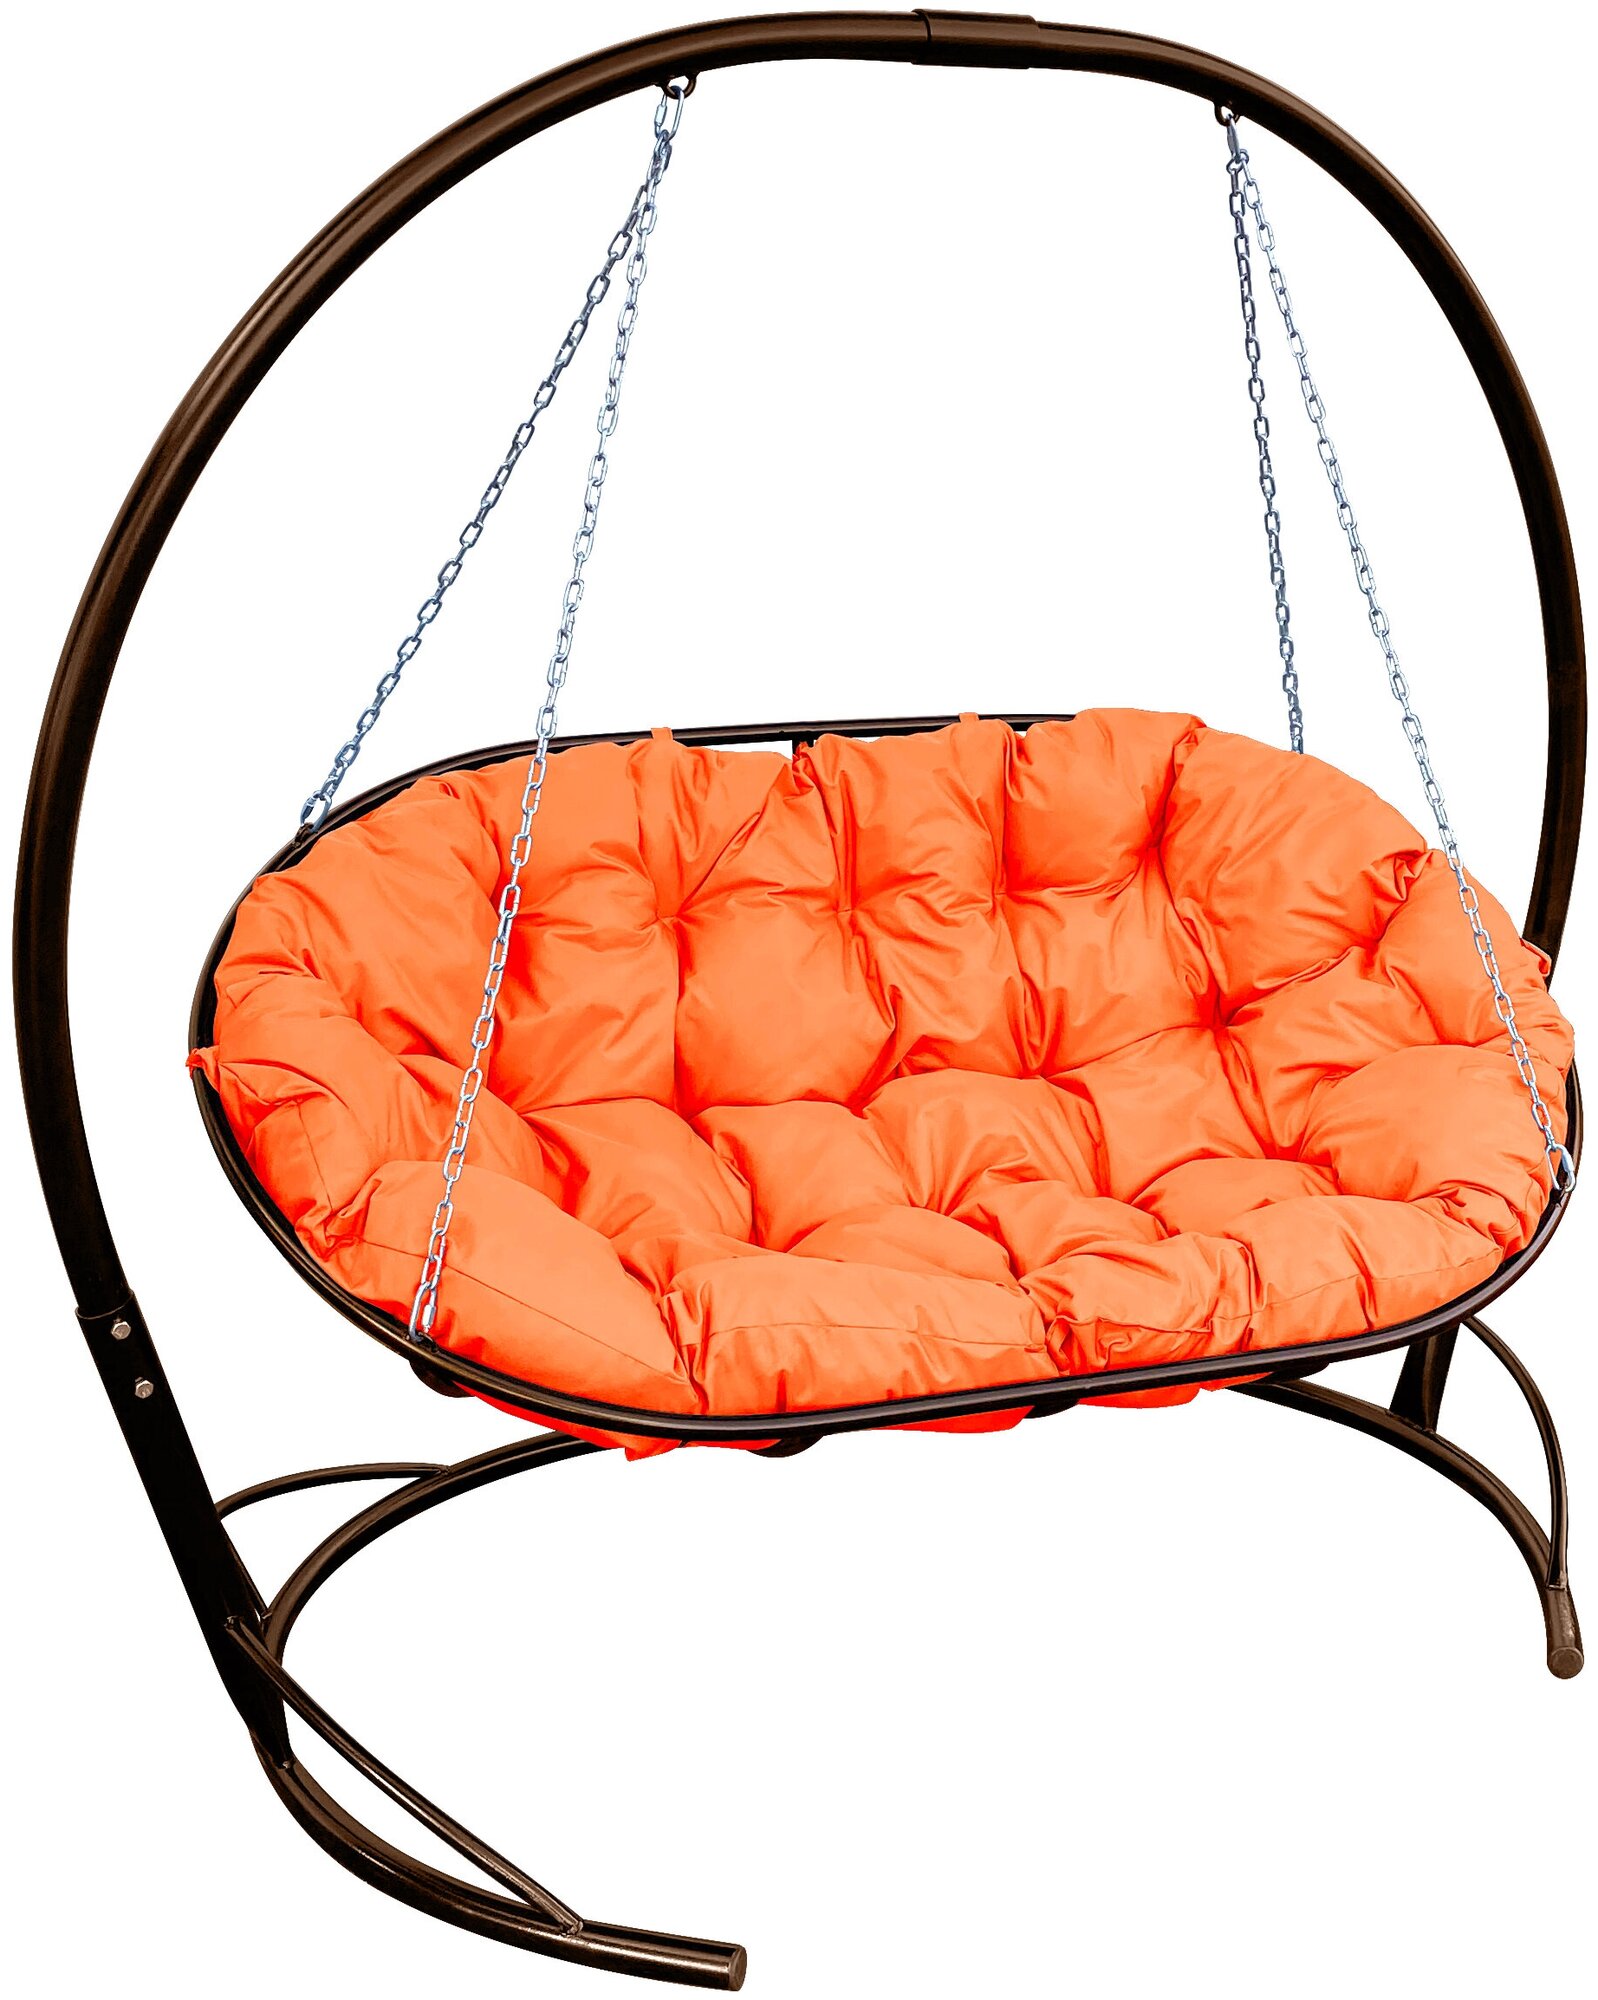 Диван m-group мамасан подвесной коричневый, оранжевая подушка